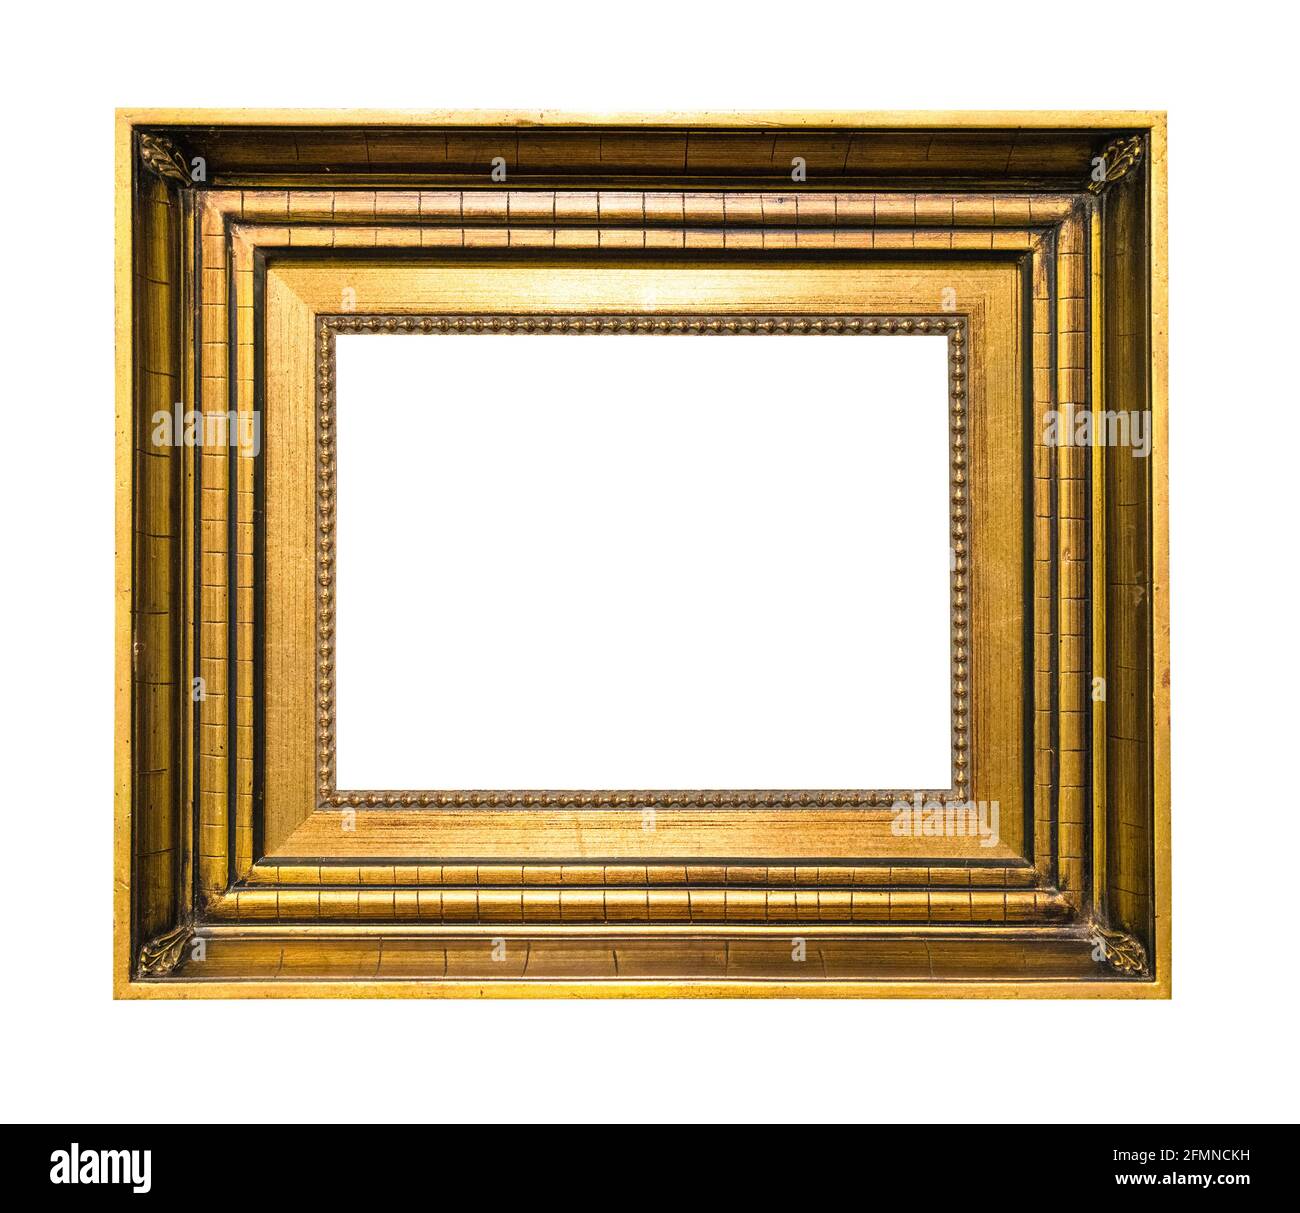 Sehr breiter alter Holzbildrahmen mit leerem Leinwandausschnitt Auf weißem  Hintergrund Stockfotografie - Alamy